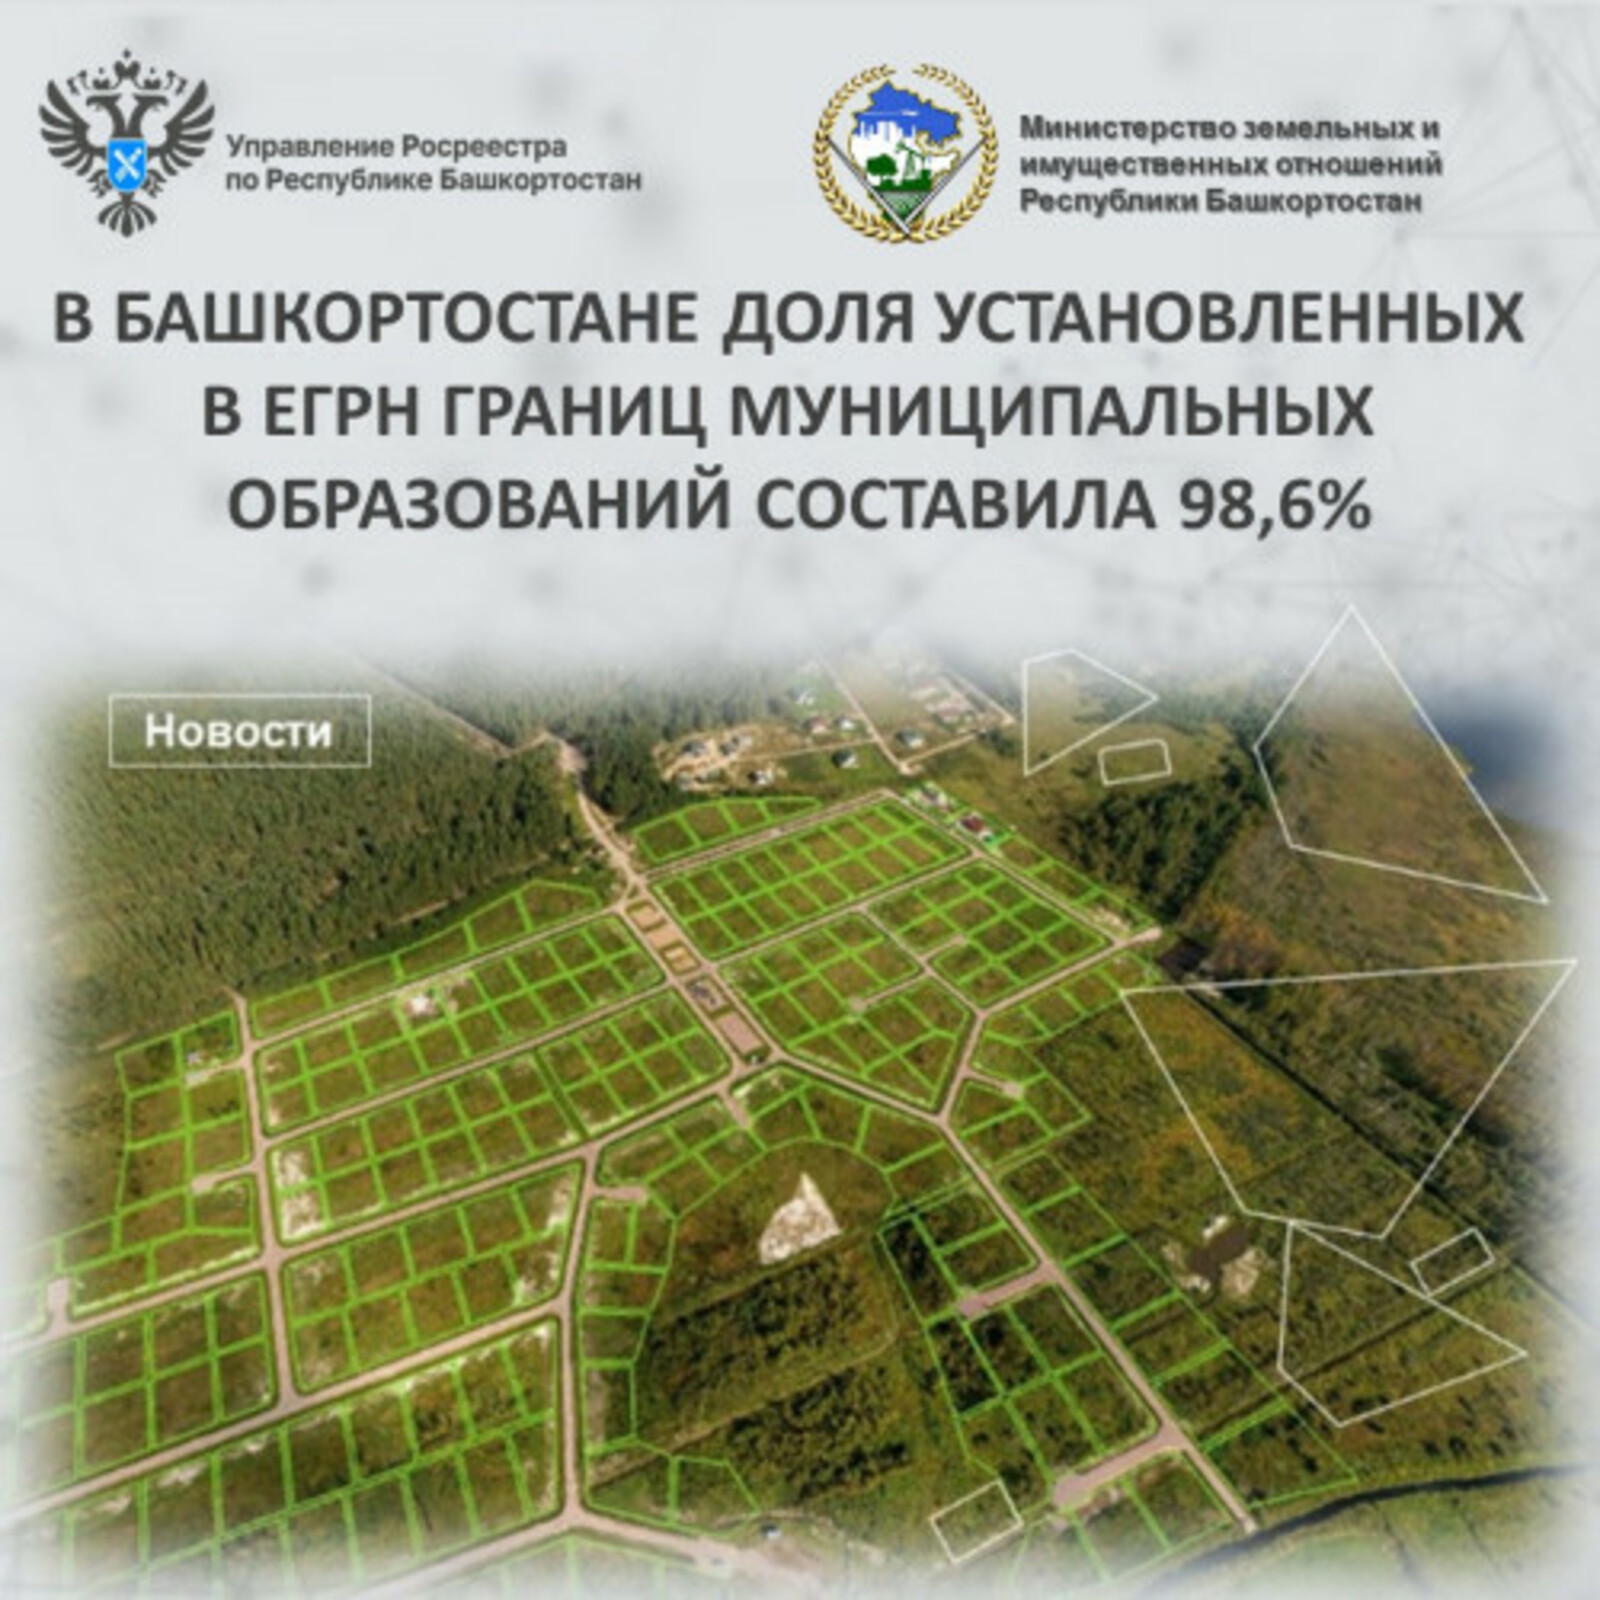 В Башкортостане доля установленных в ЕГРН границ муниципальных образований составила 98,6%